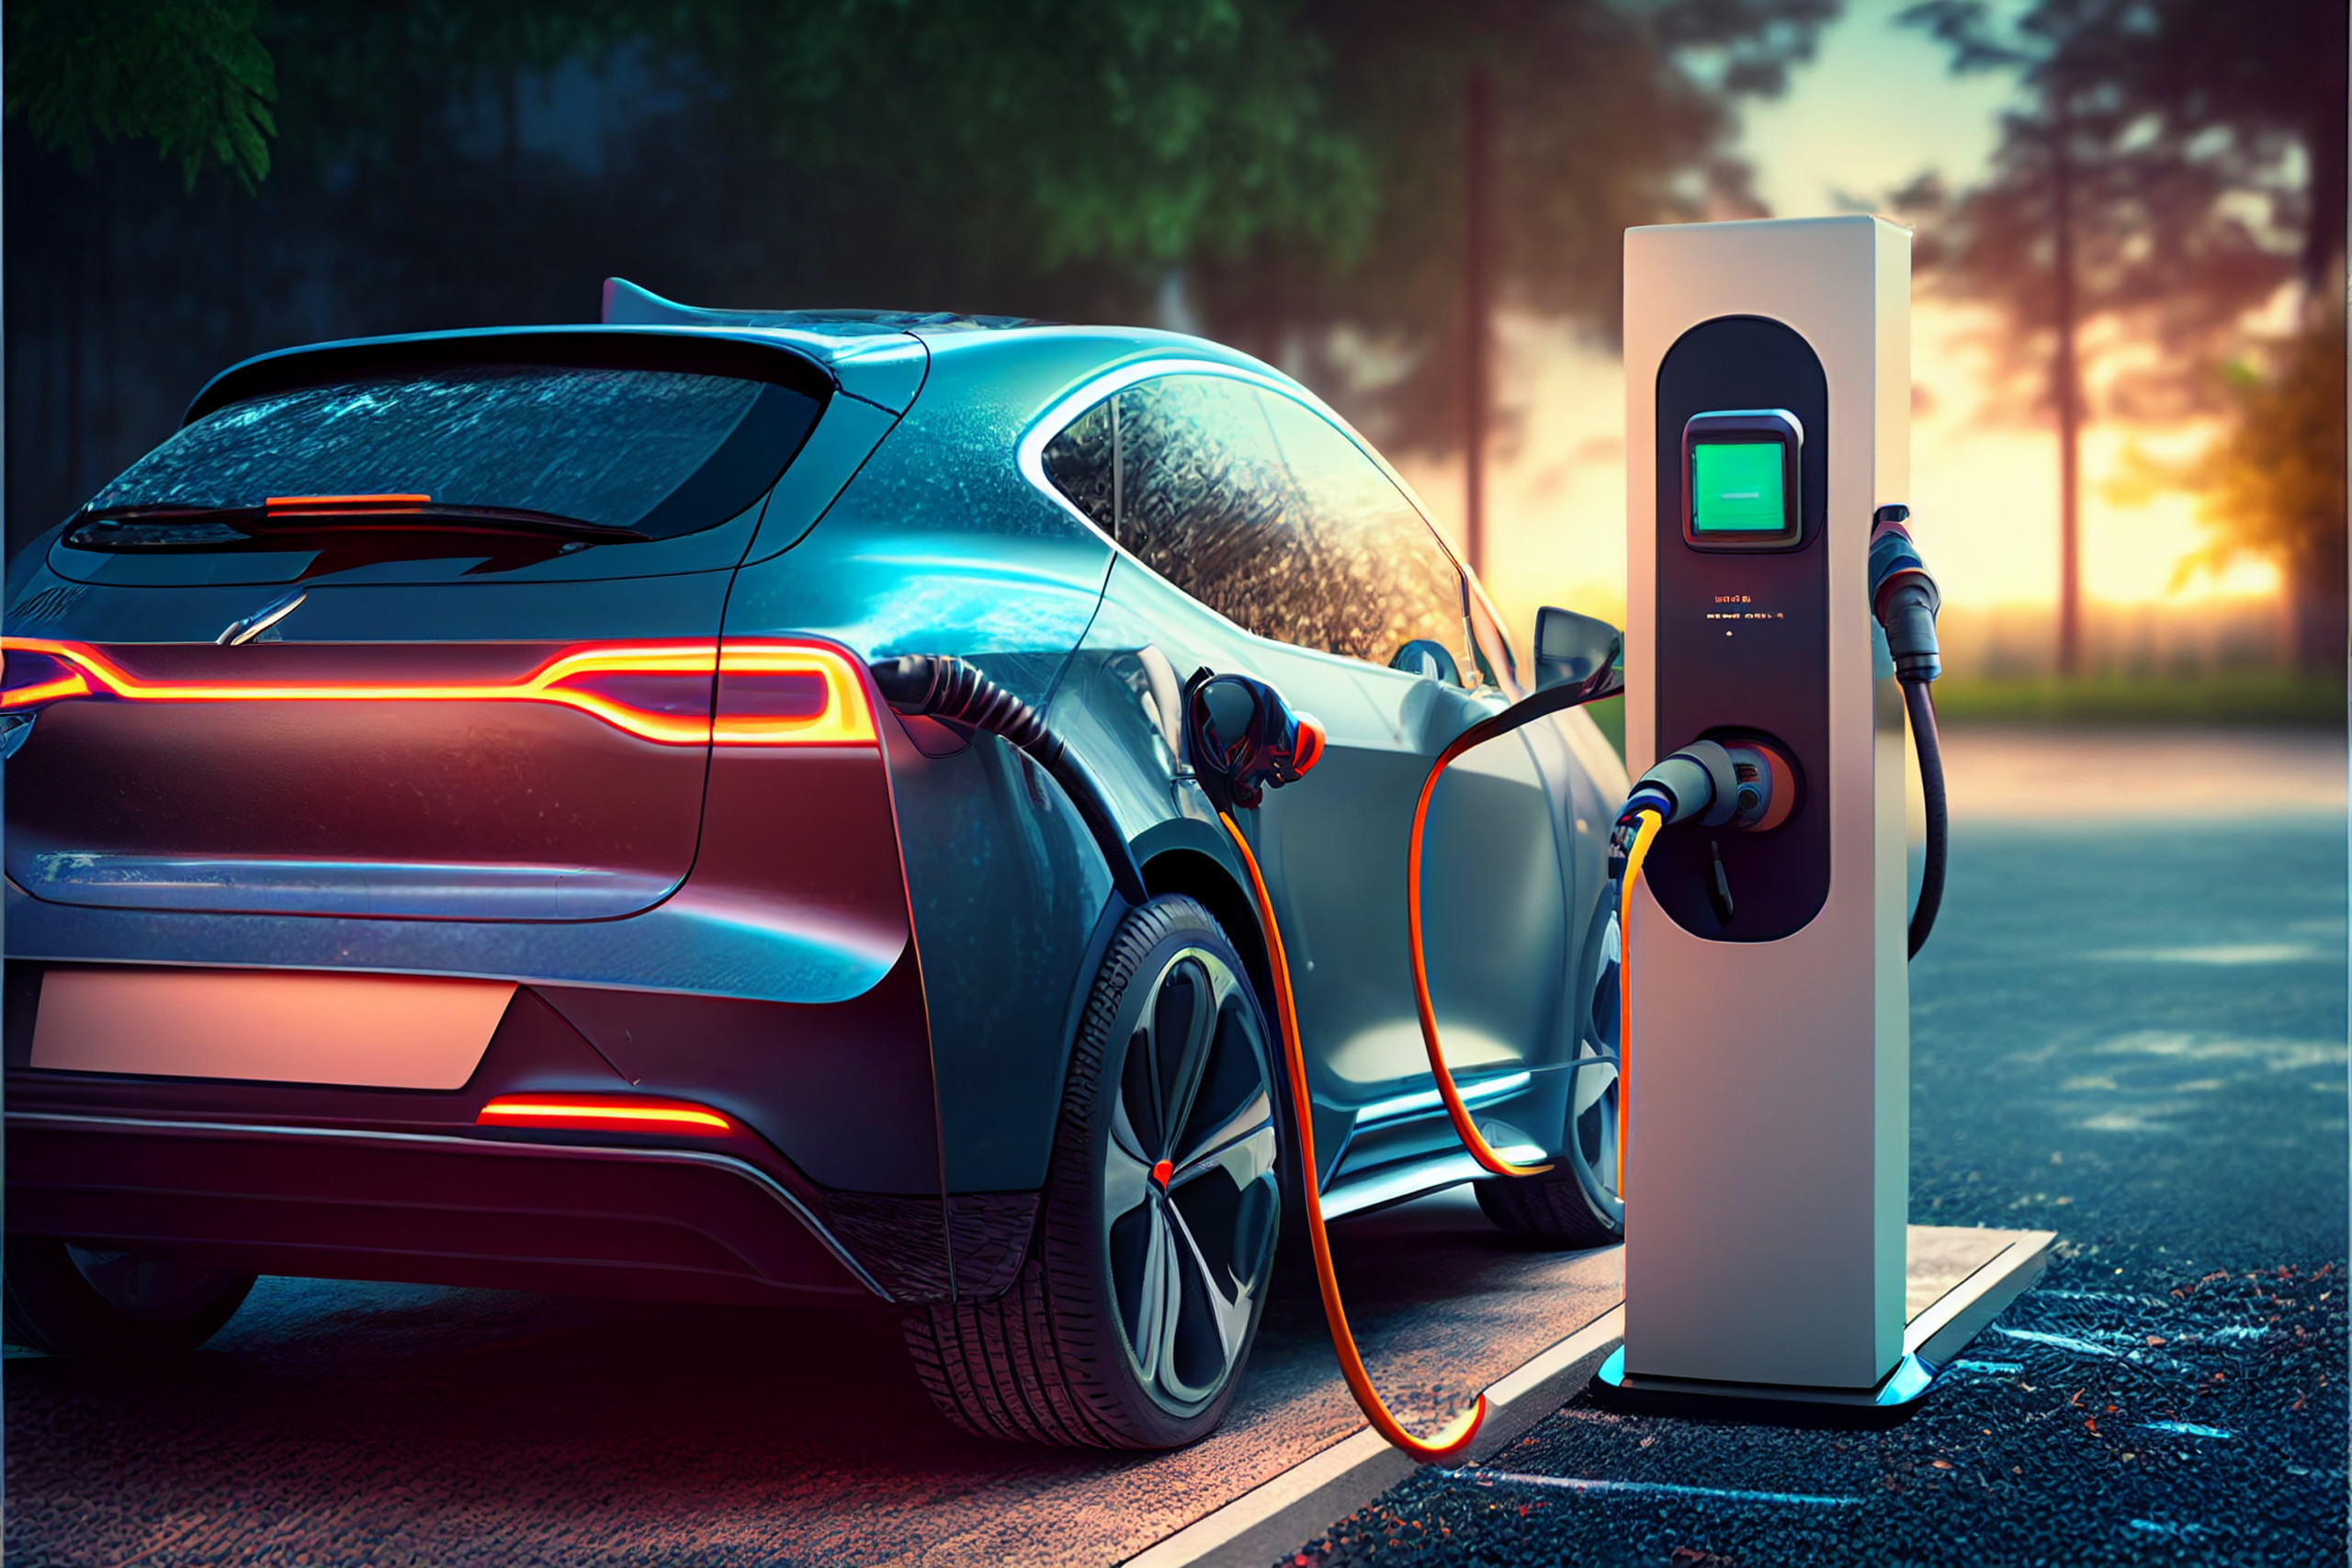 Megatrend-Investments: Das sind neben Tesla die potenziellen Profiteure rund um die Wertschöpfungskette für batteriebetriebene Elektrofahrzeuge